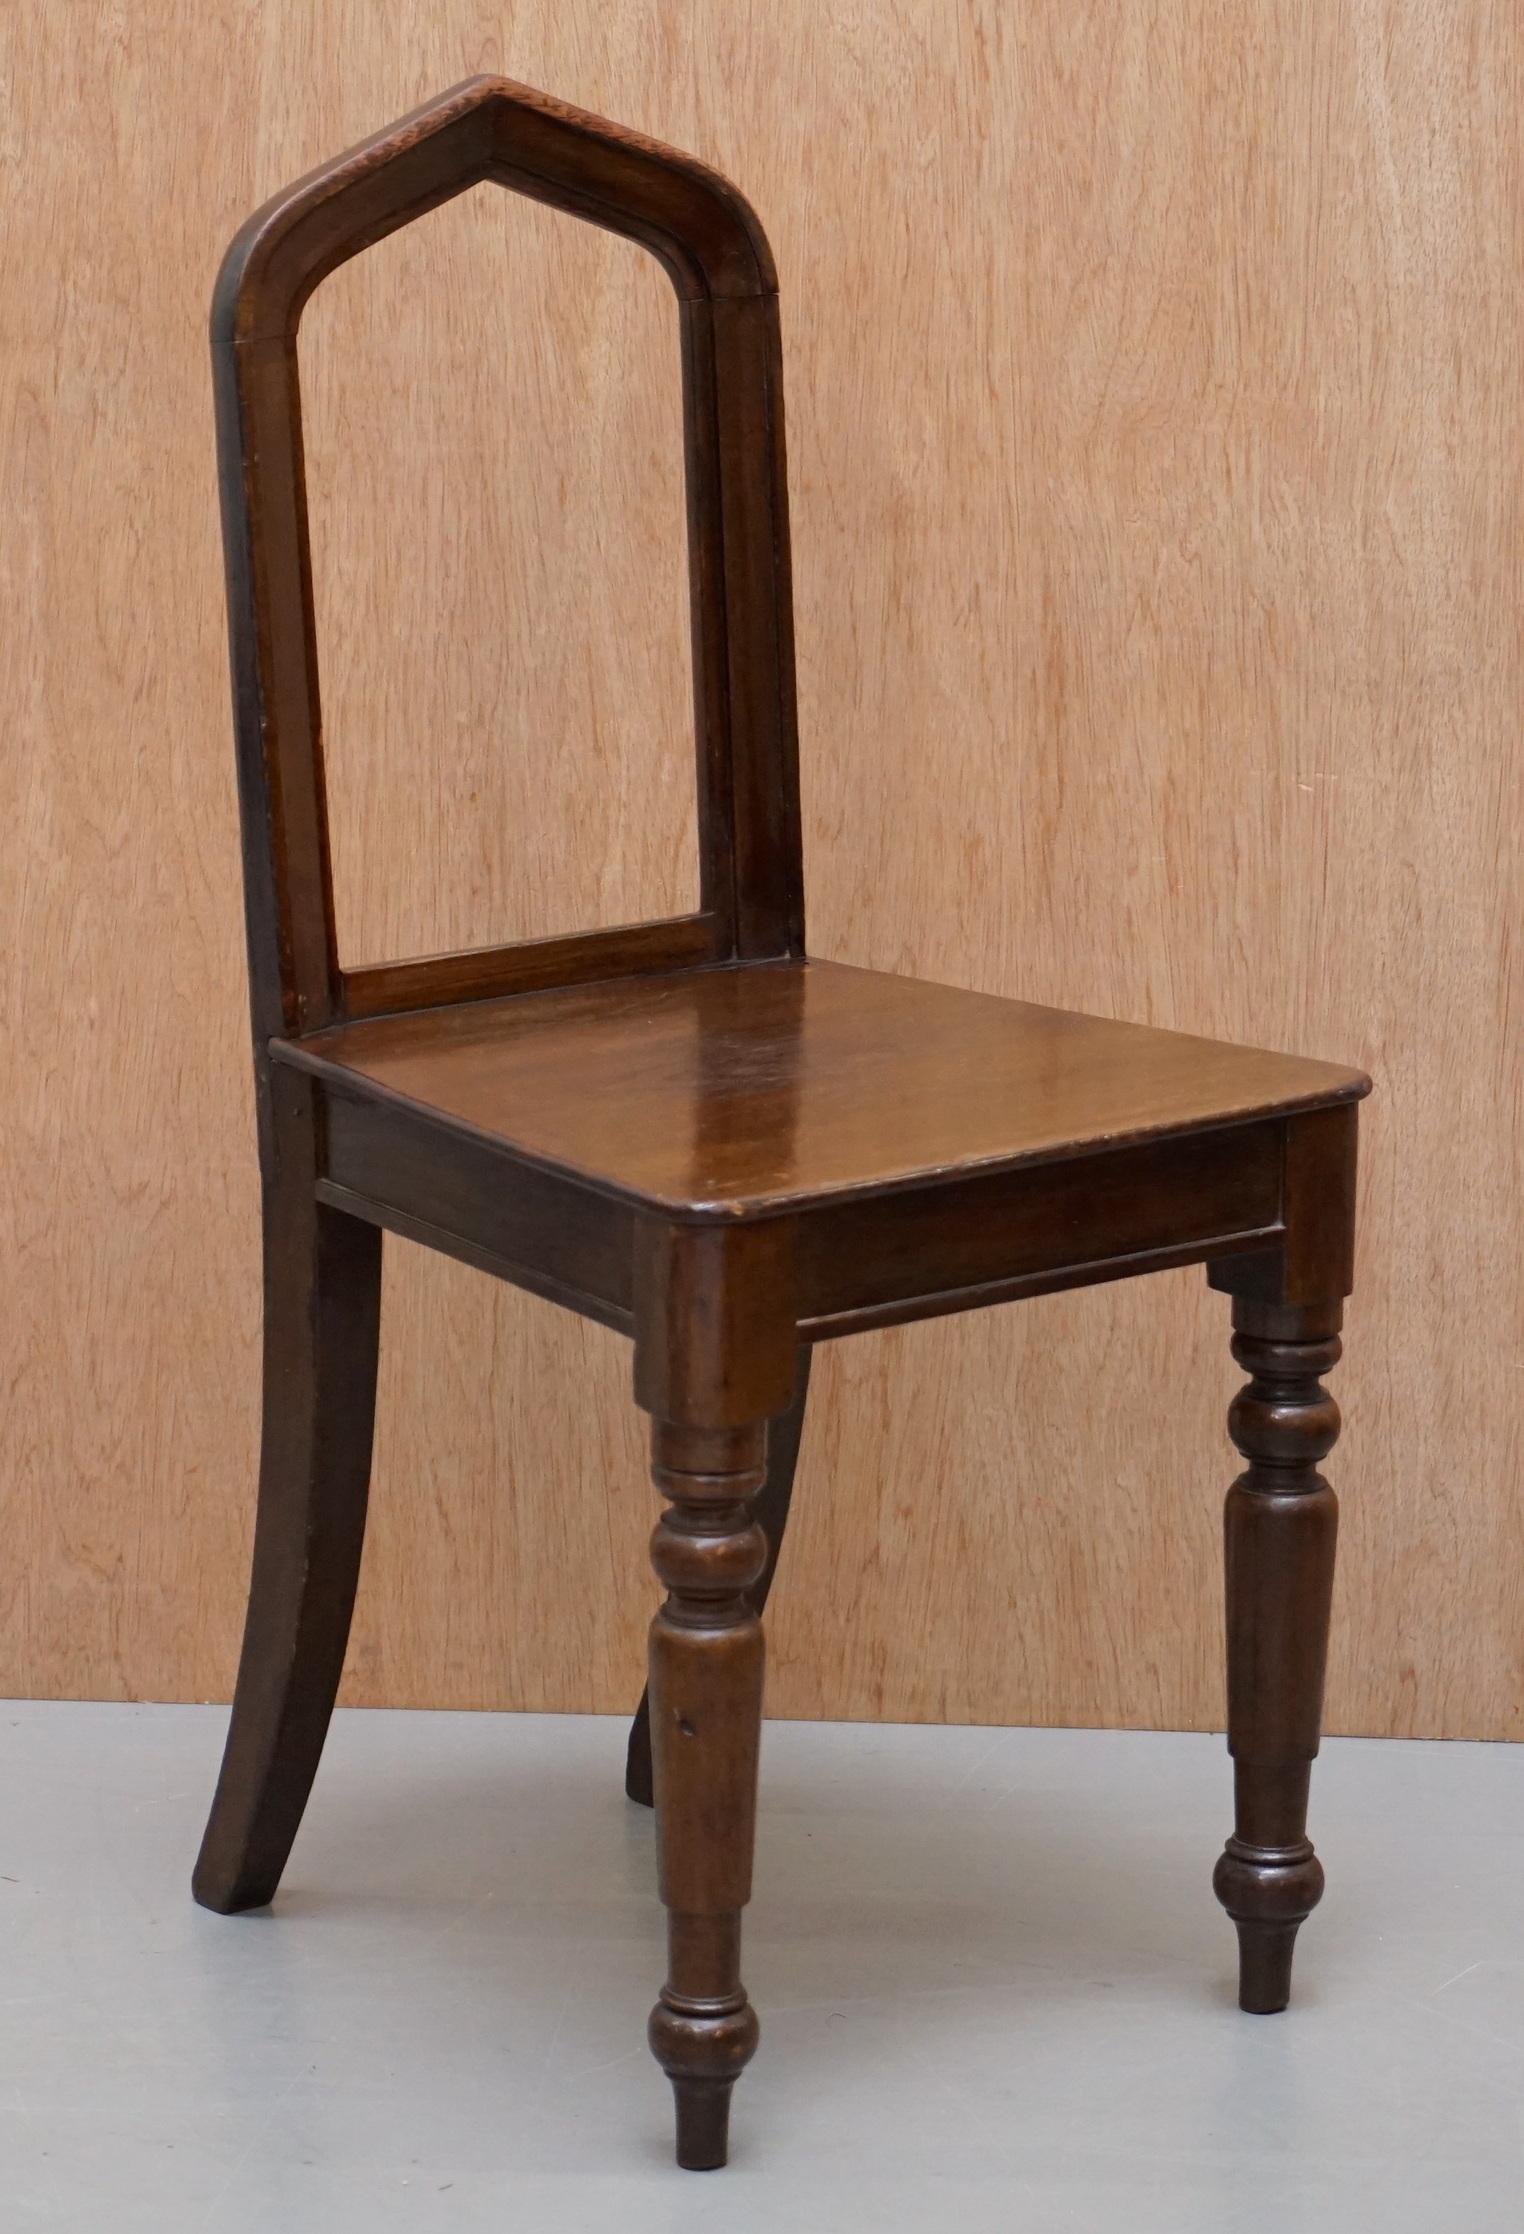 Nous avons le plaisir de proposer à la vente cette belle suite de six chaises de salle à manger victoriennes en chêne de style néo-gothique anglais, datant d'environ 1890

Un ensemble très décoratif et bien fait, chaque chaise a un dossier en